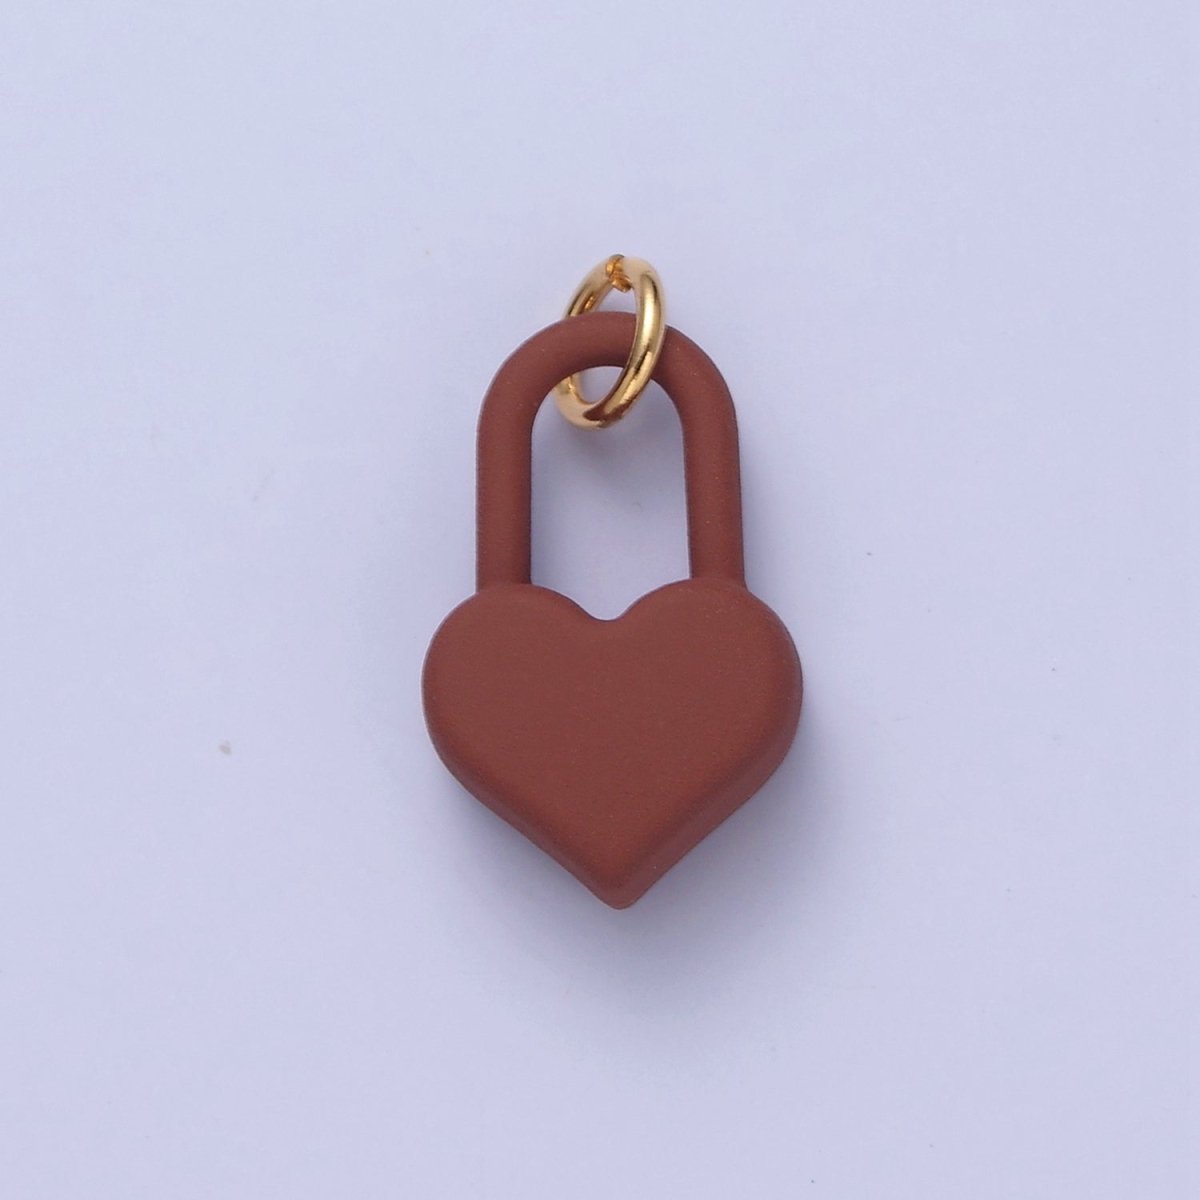 Dainty Matte Enamel Heart Lock Charm For Jewelry Making | W-302-W-311 - DLUXCA